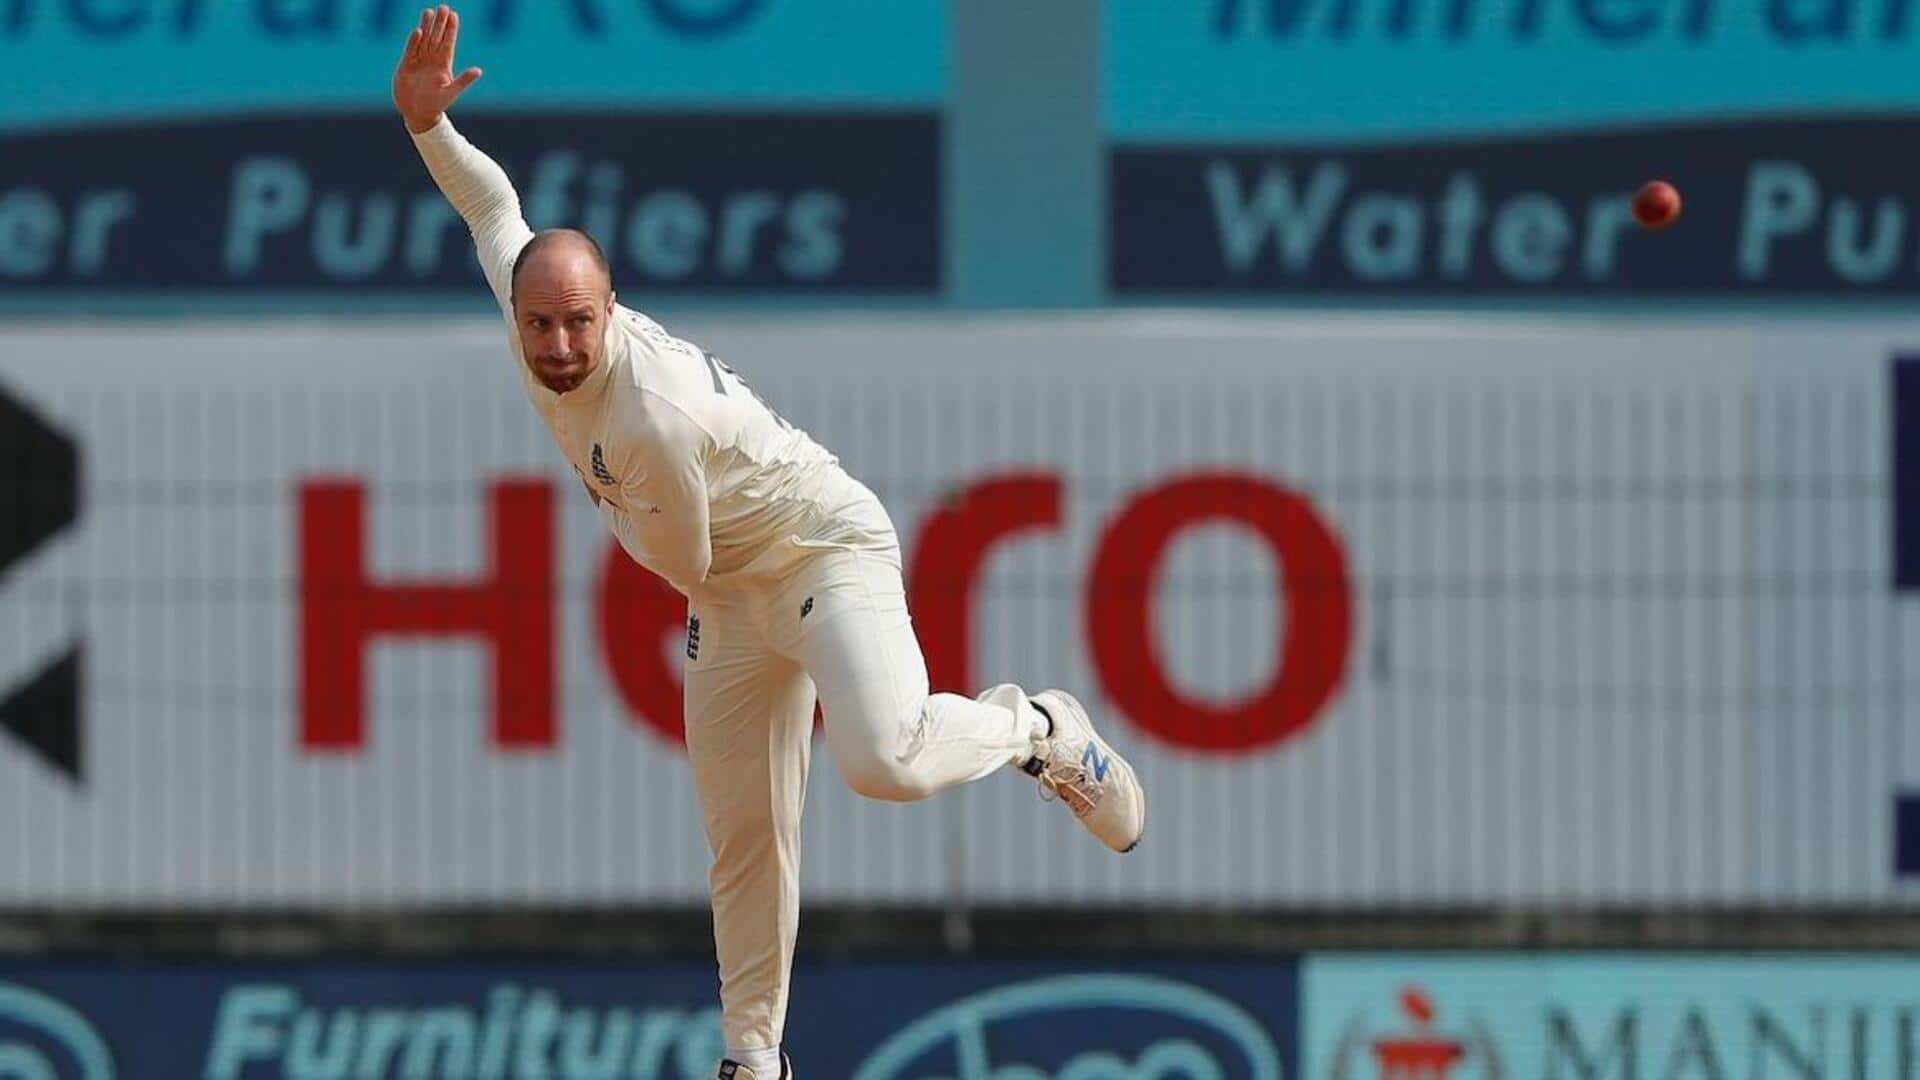 भारत बनाम इंग्लैंड: जैक लीच बची हुई टेस्ट सीरीज से बाहर, ECB ने दी जानकारी